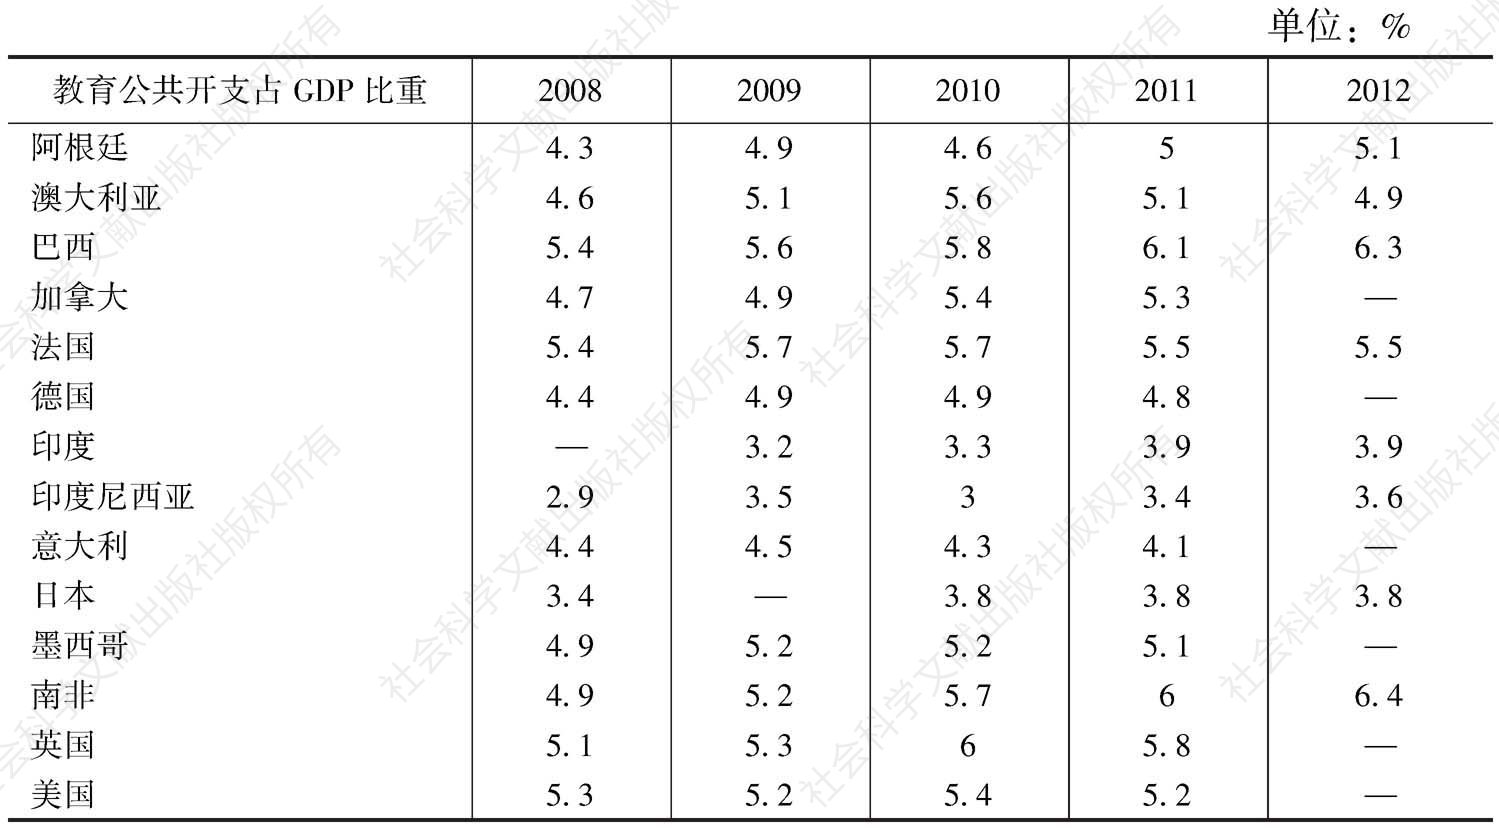 表3-8 G20典型国家教育公共开支占GDP比重